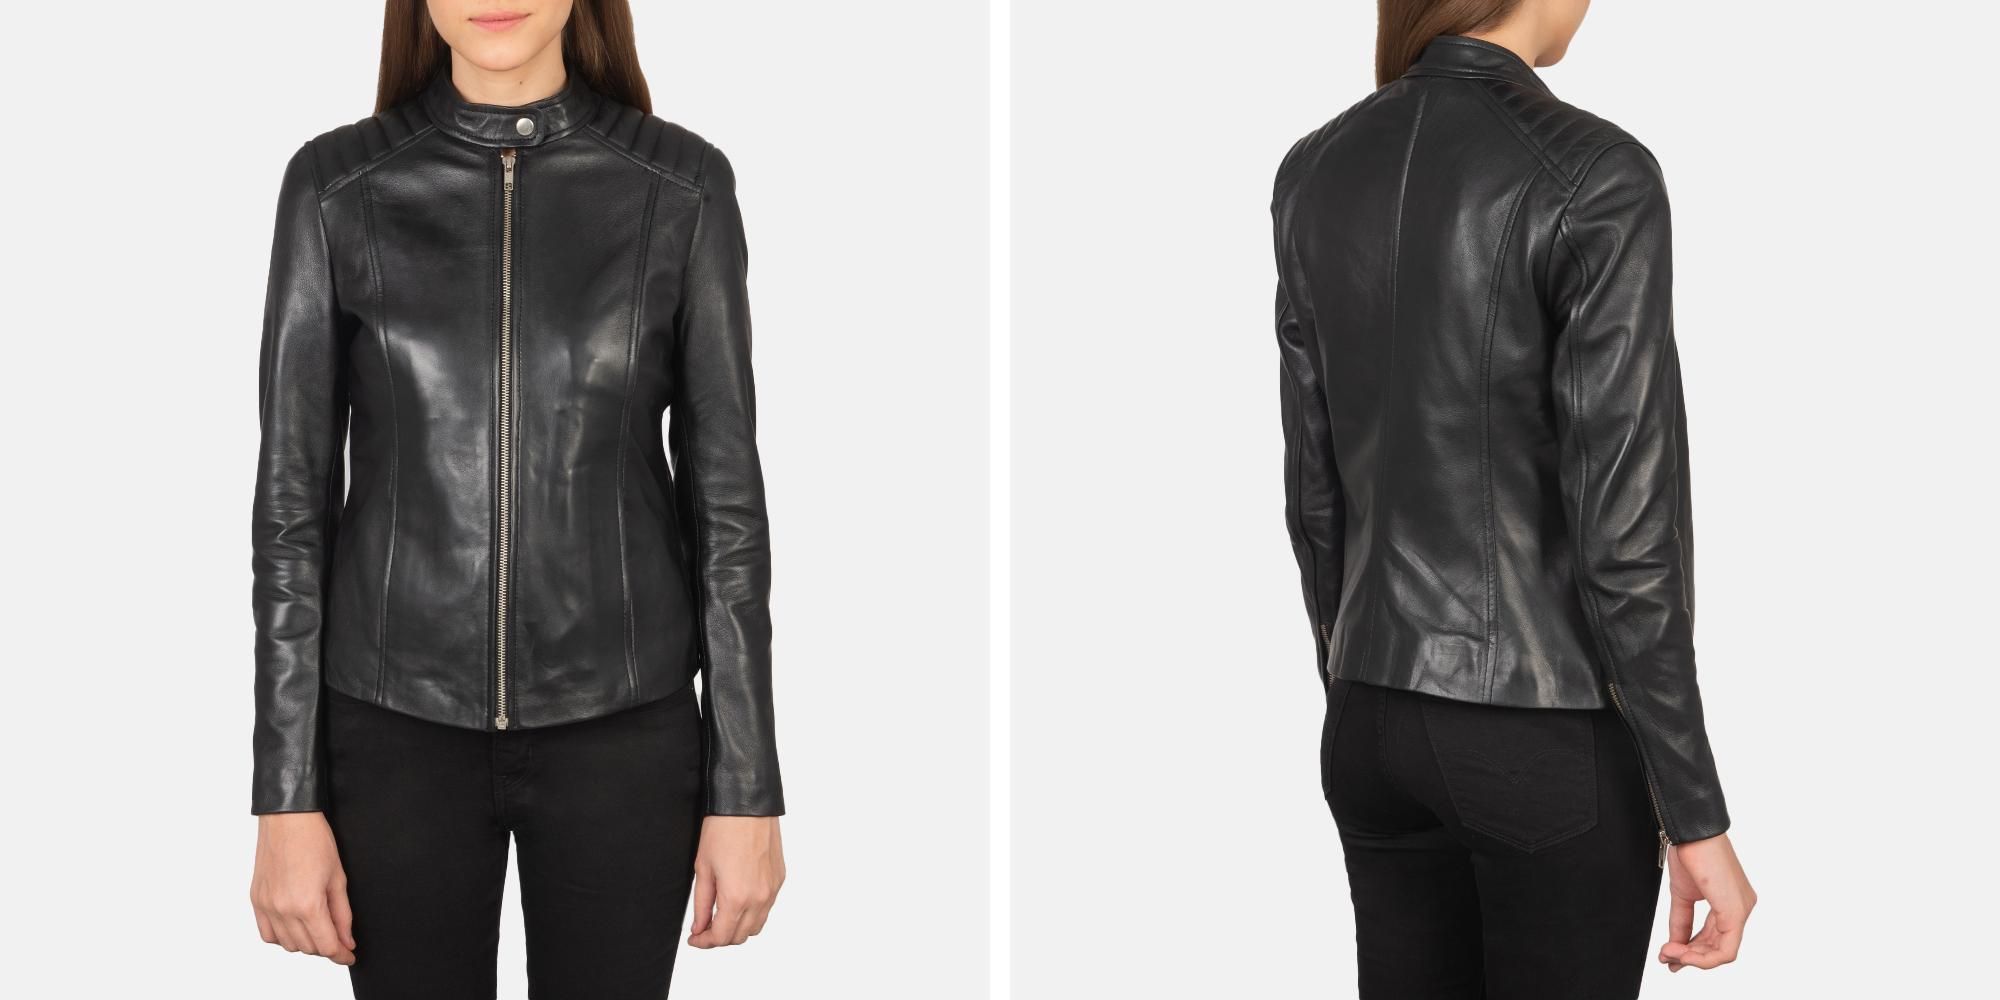 Kelsee Black Leather Biker Jacket | The Jacket Maker